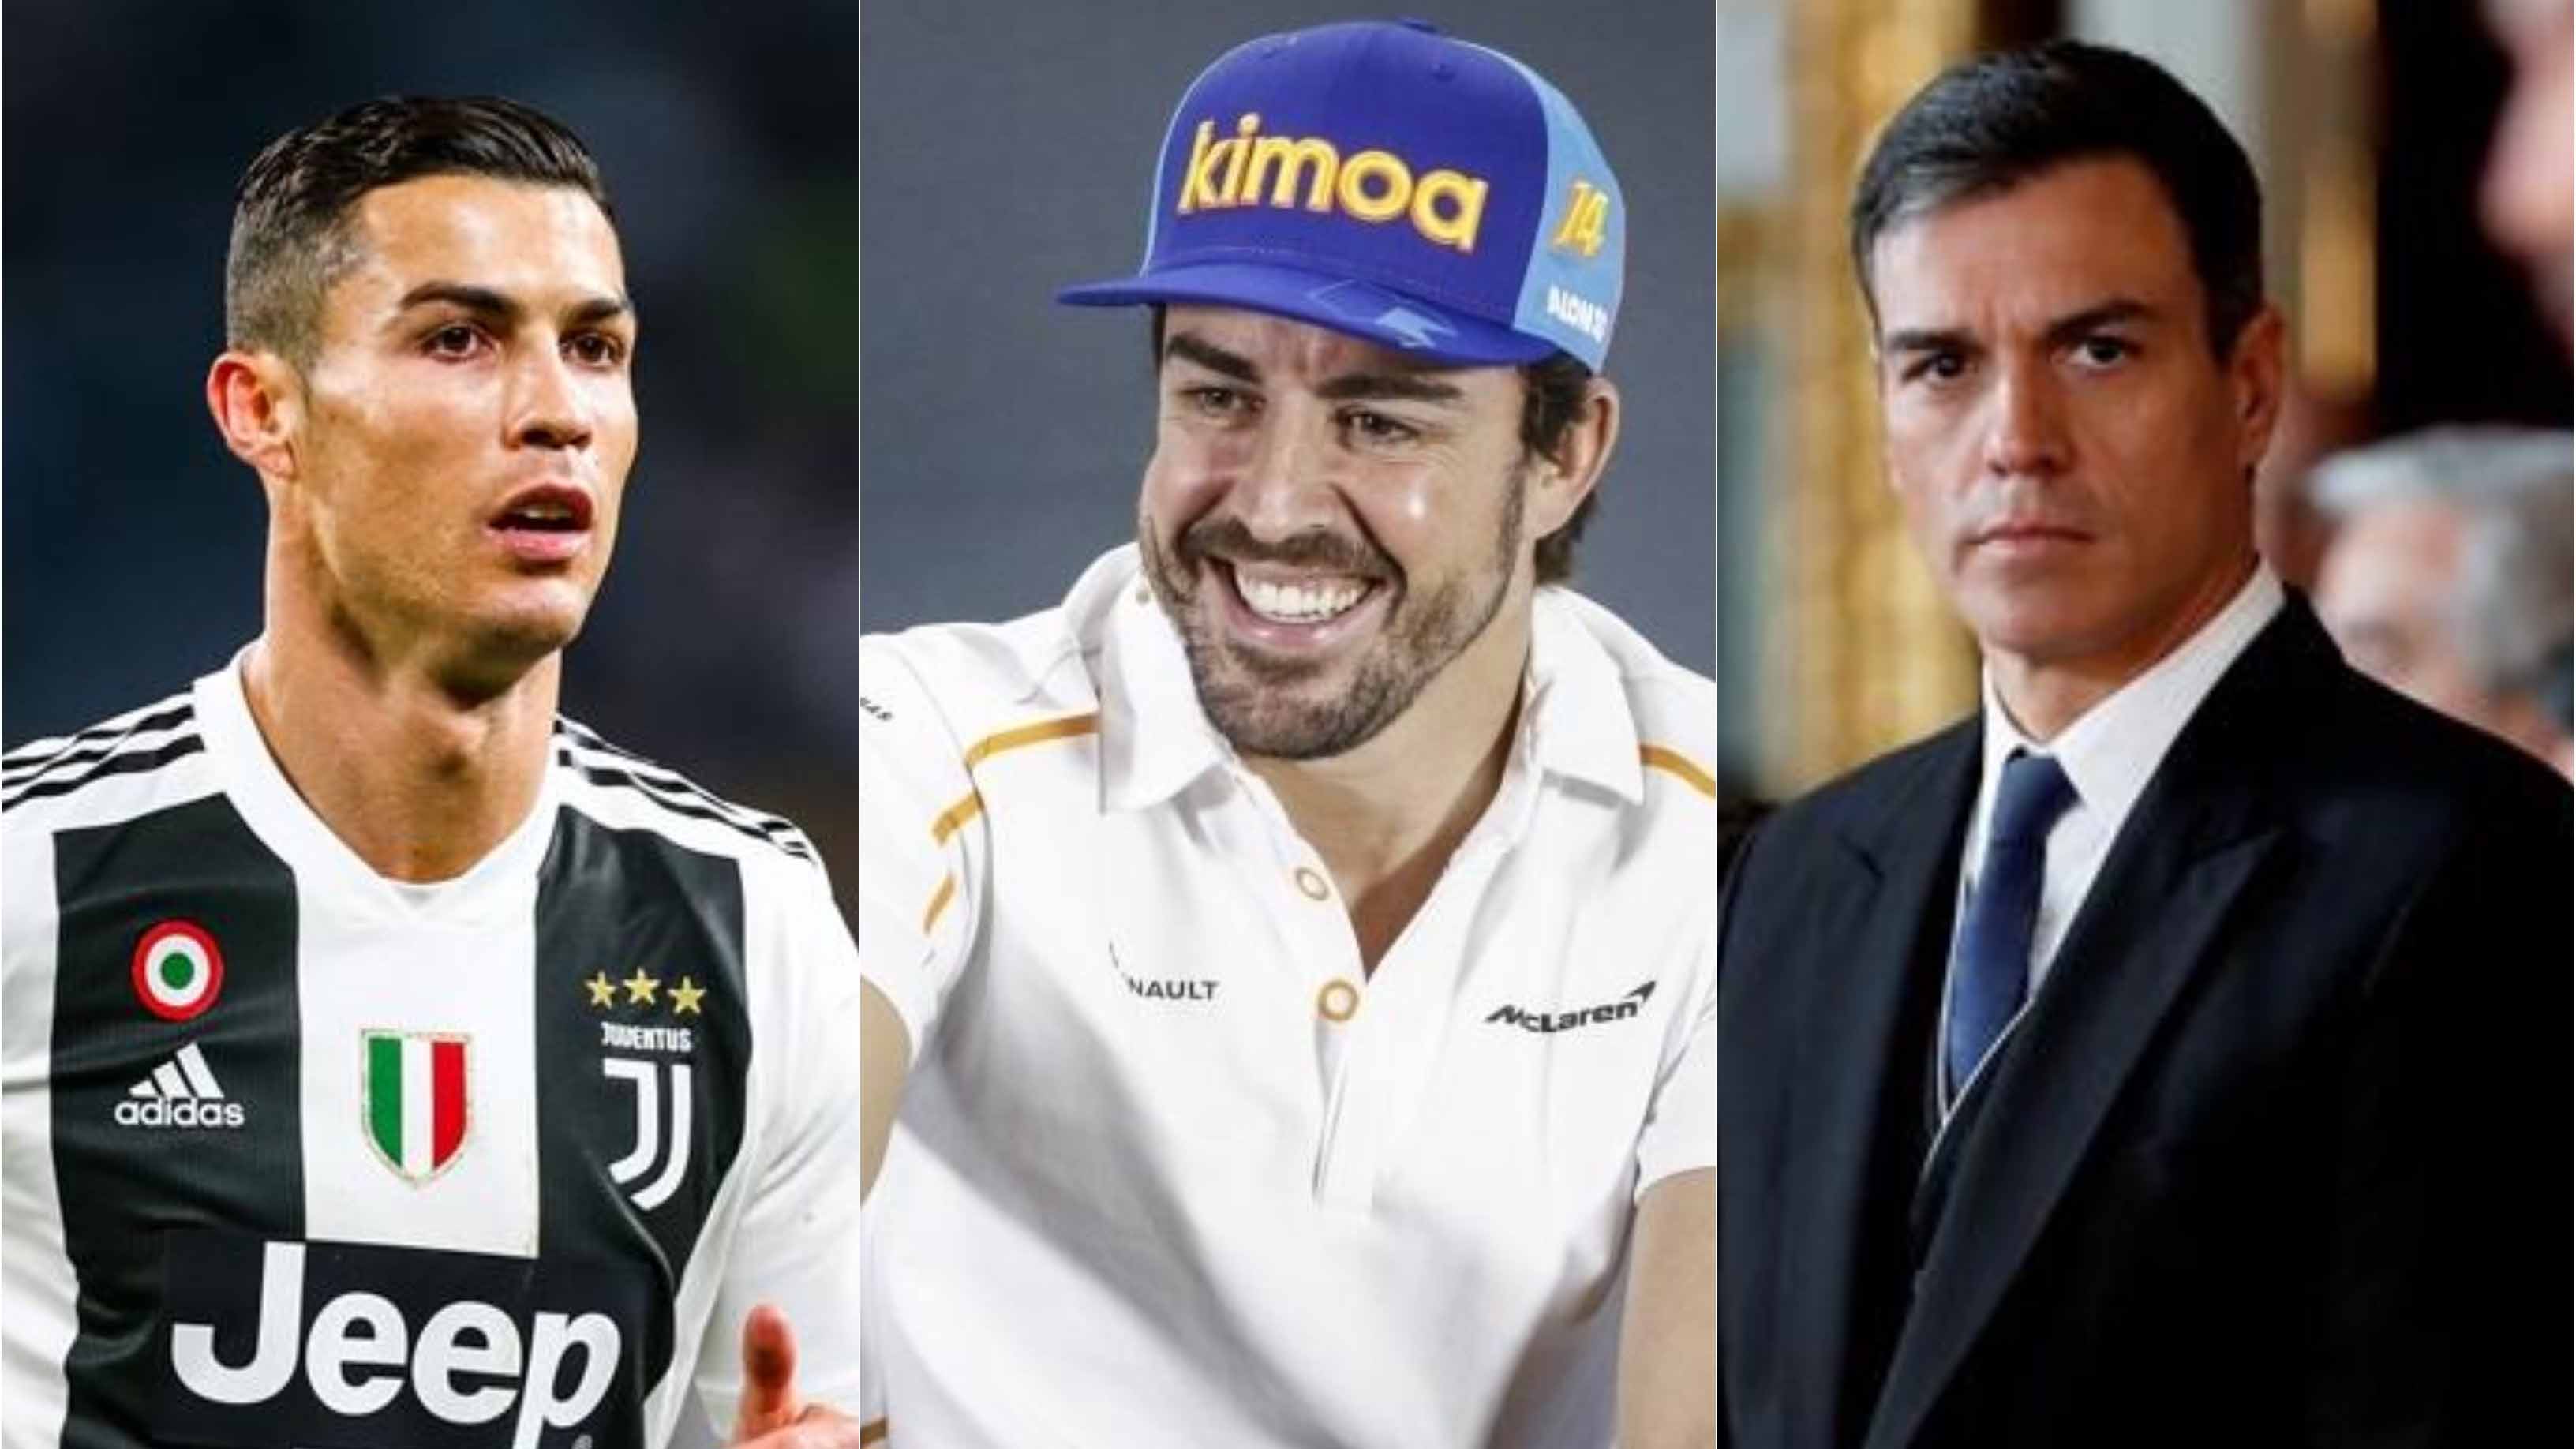 El Sumario - Cristiano Ronaldo, Fernando Alonso y Pedro Sánchez son los escogidos como personajes del año partiendo de las búsquedas en Google de los españoles